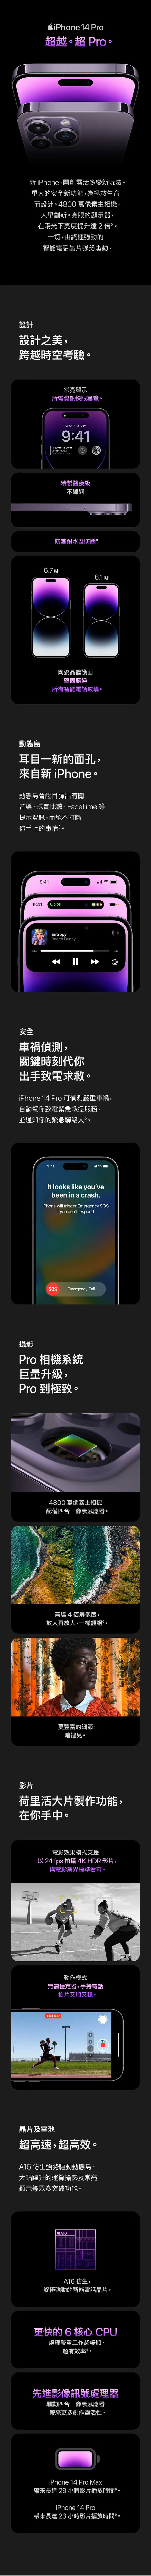 關於 iPhone 14 Pro Max | iPhone 14 Pro